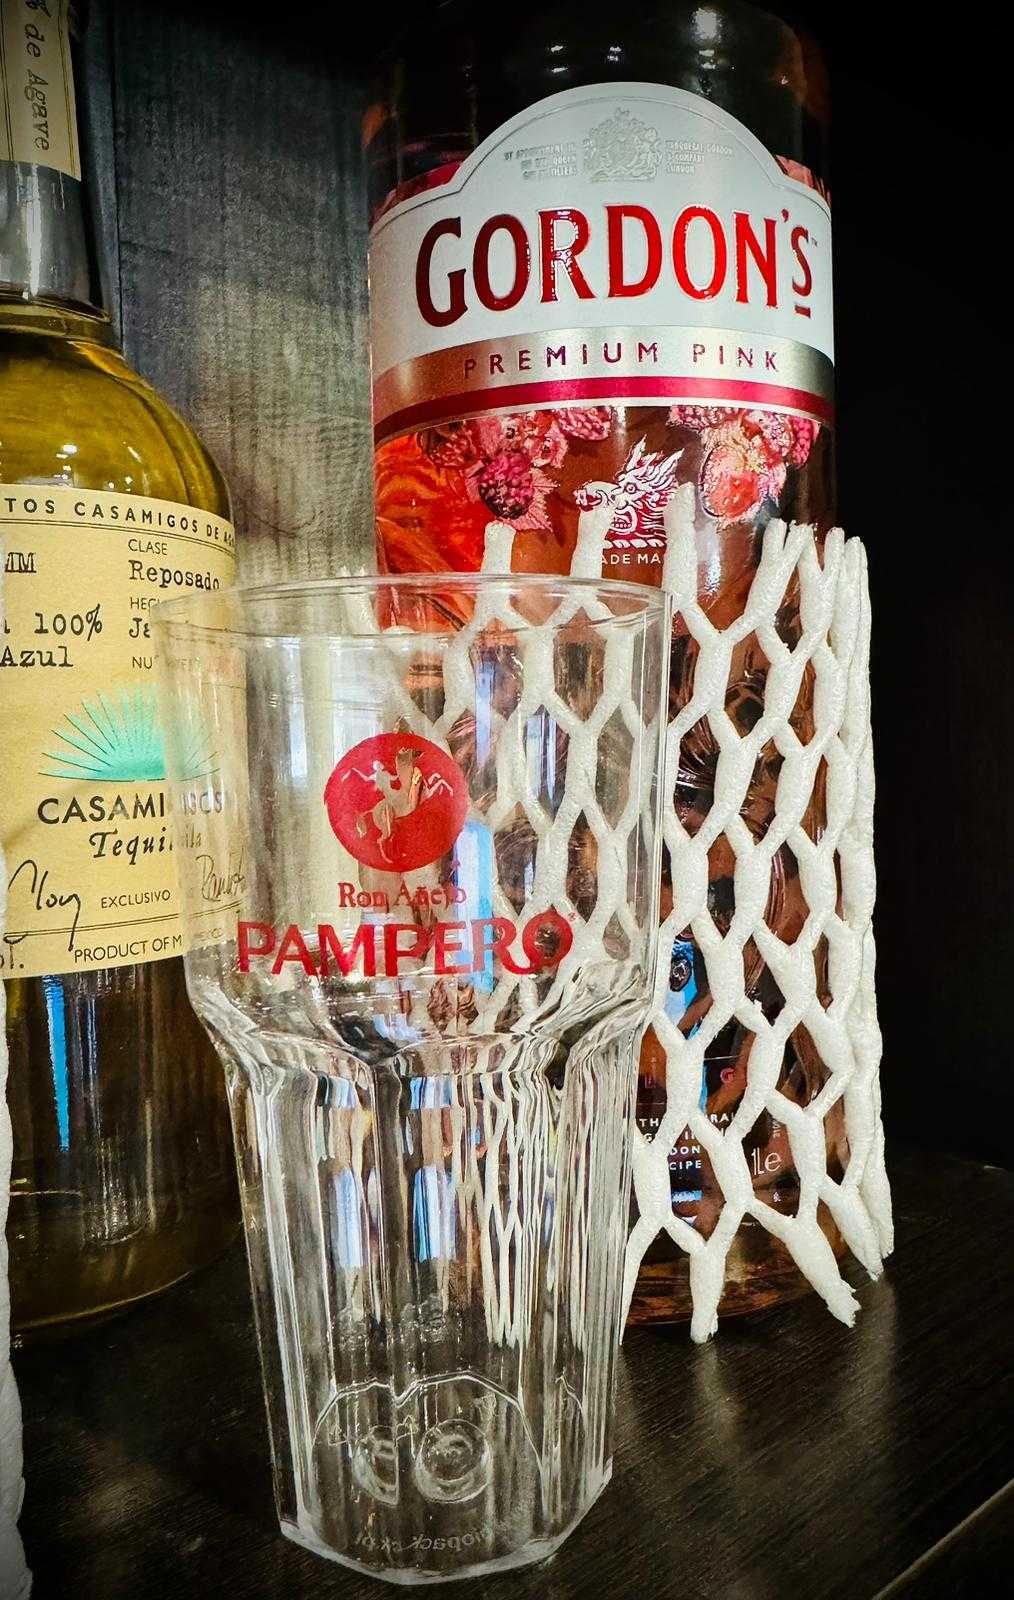 Conjunto de 10 copos Pampero - 0.50€